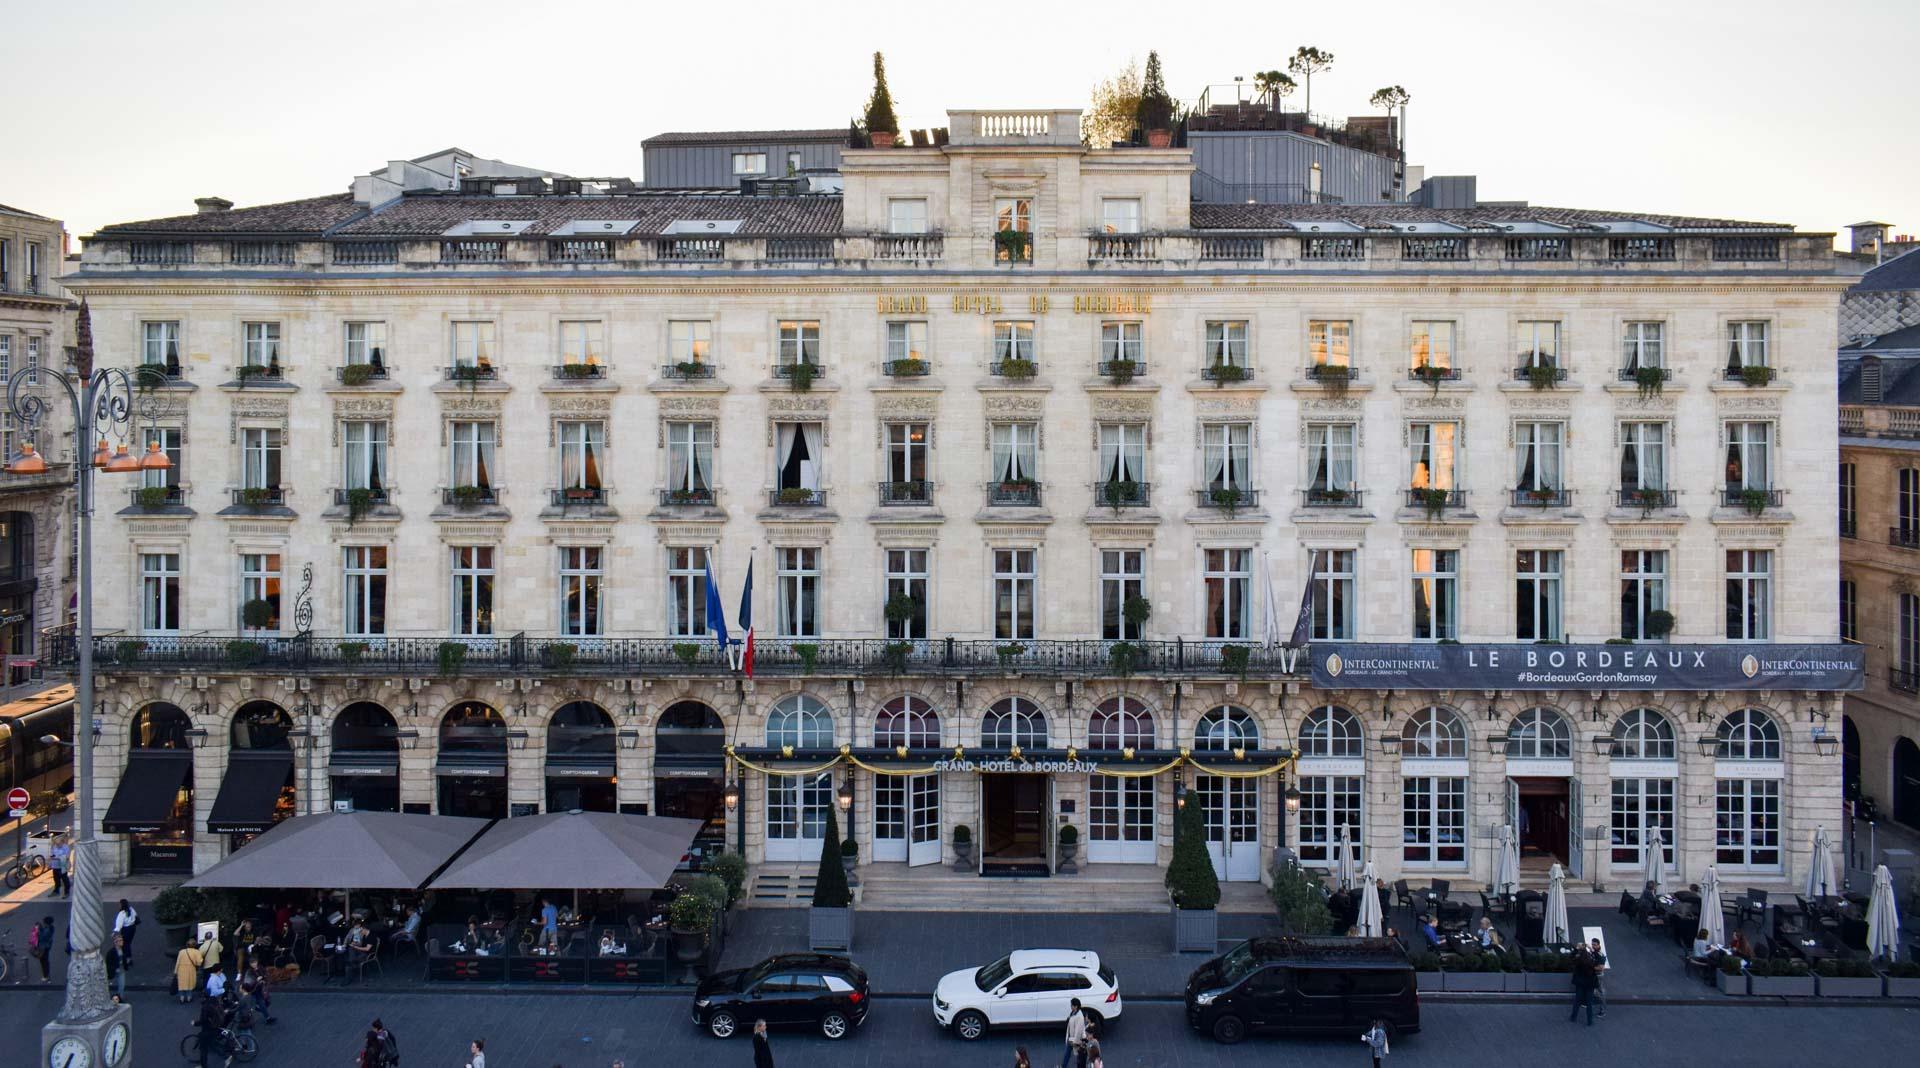 InterContinental Bordeaux - Le Grand Hôtel, la référence du luxe en ville